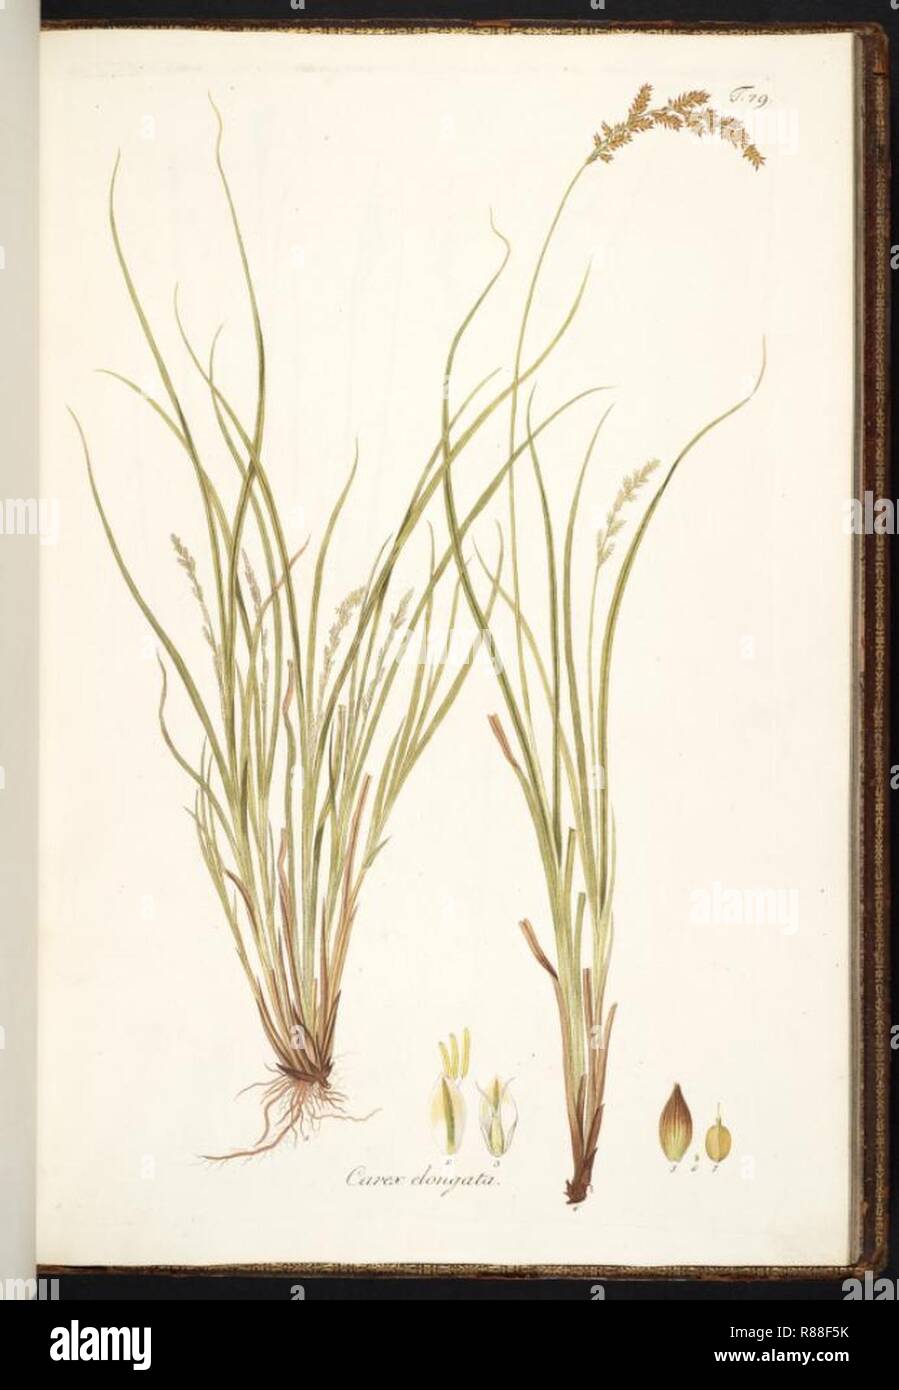 Carex elongata. Stock Photo